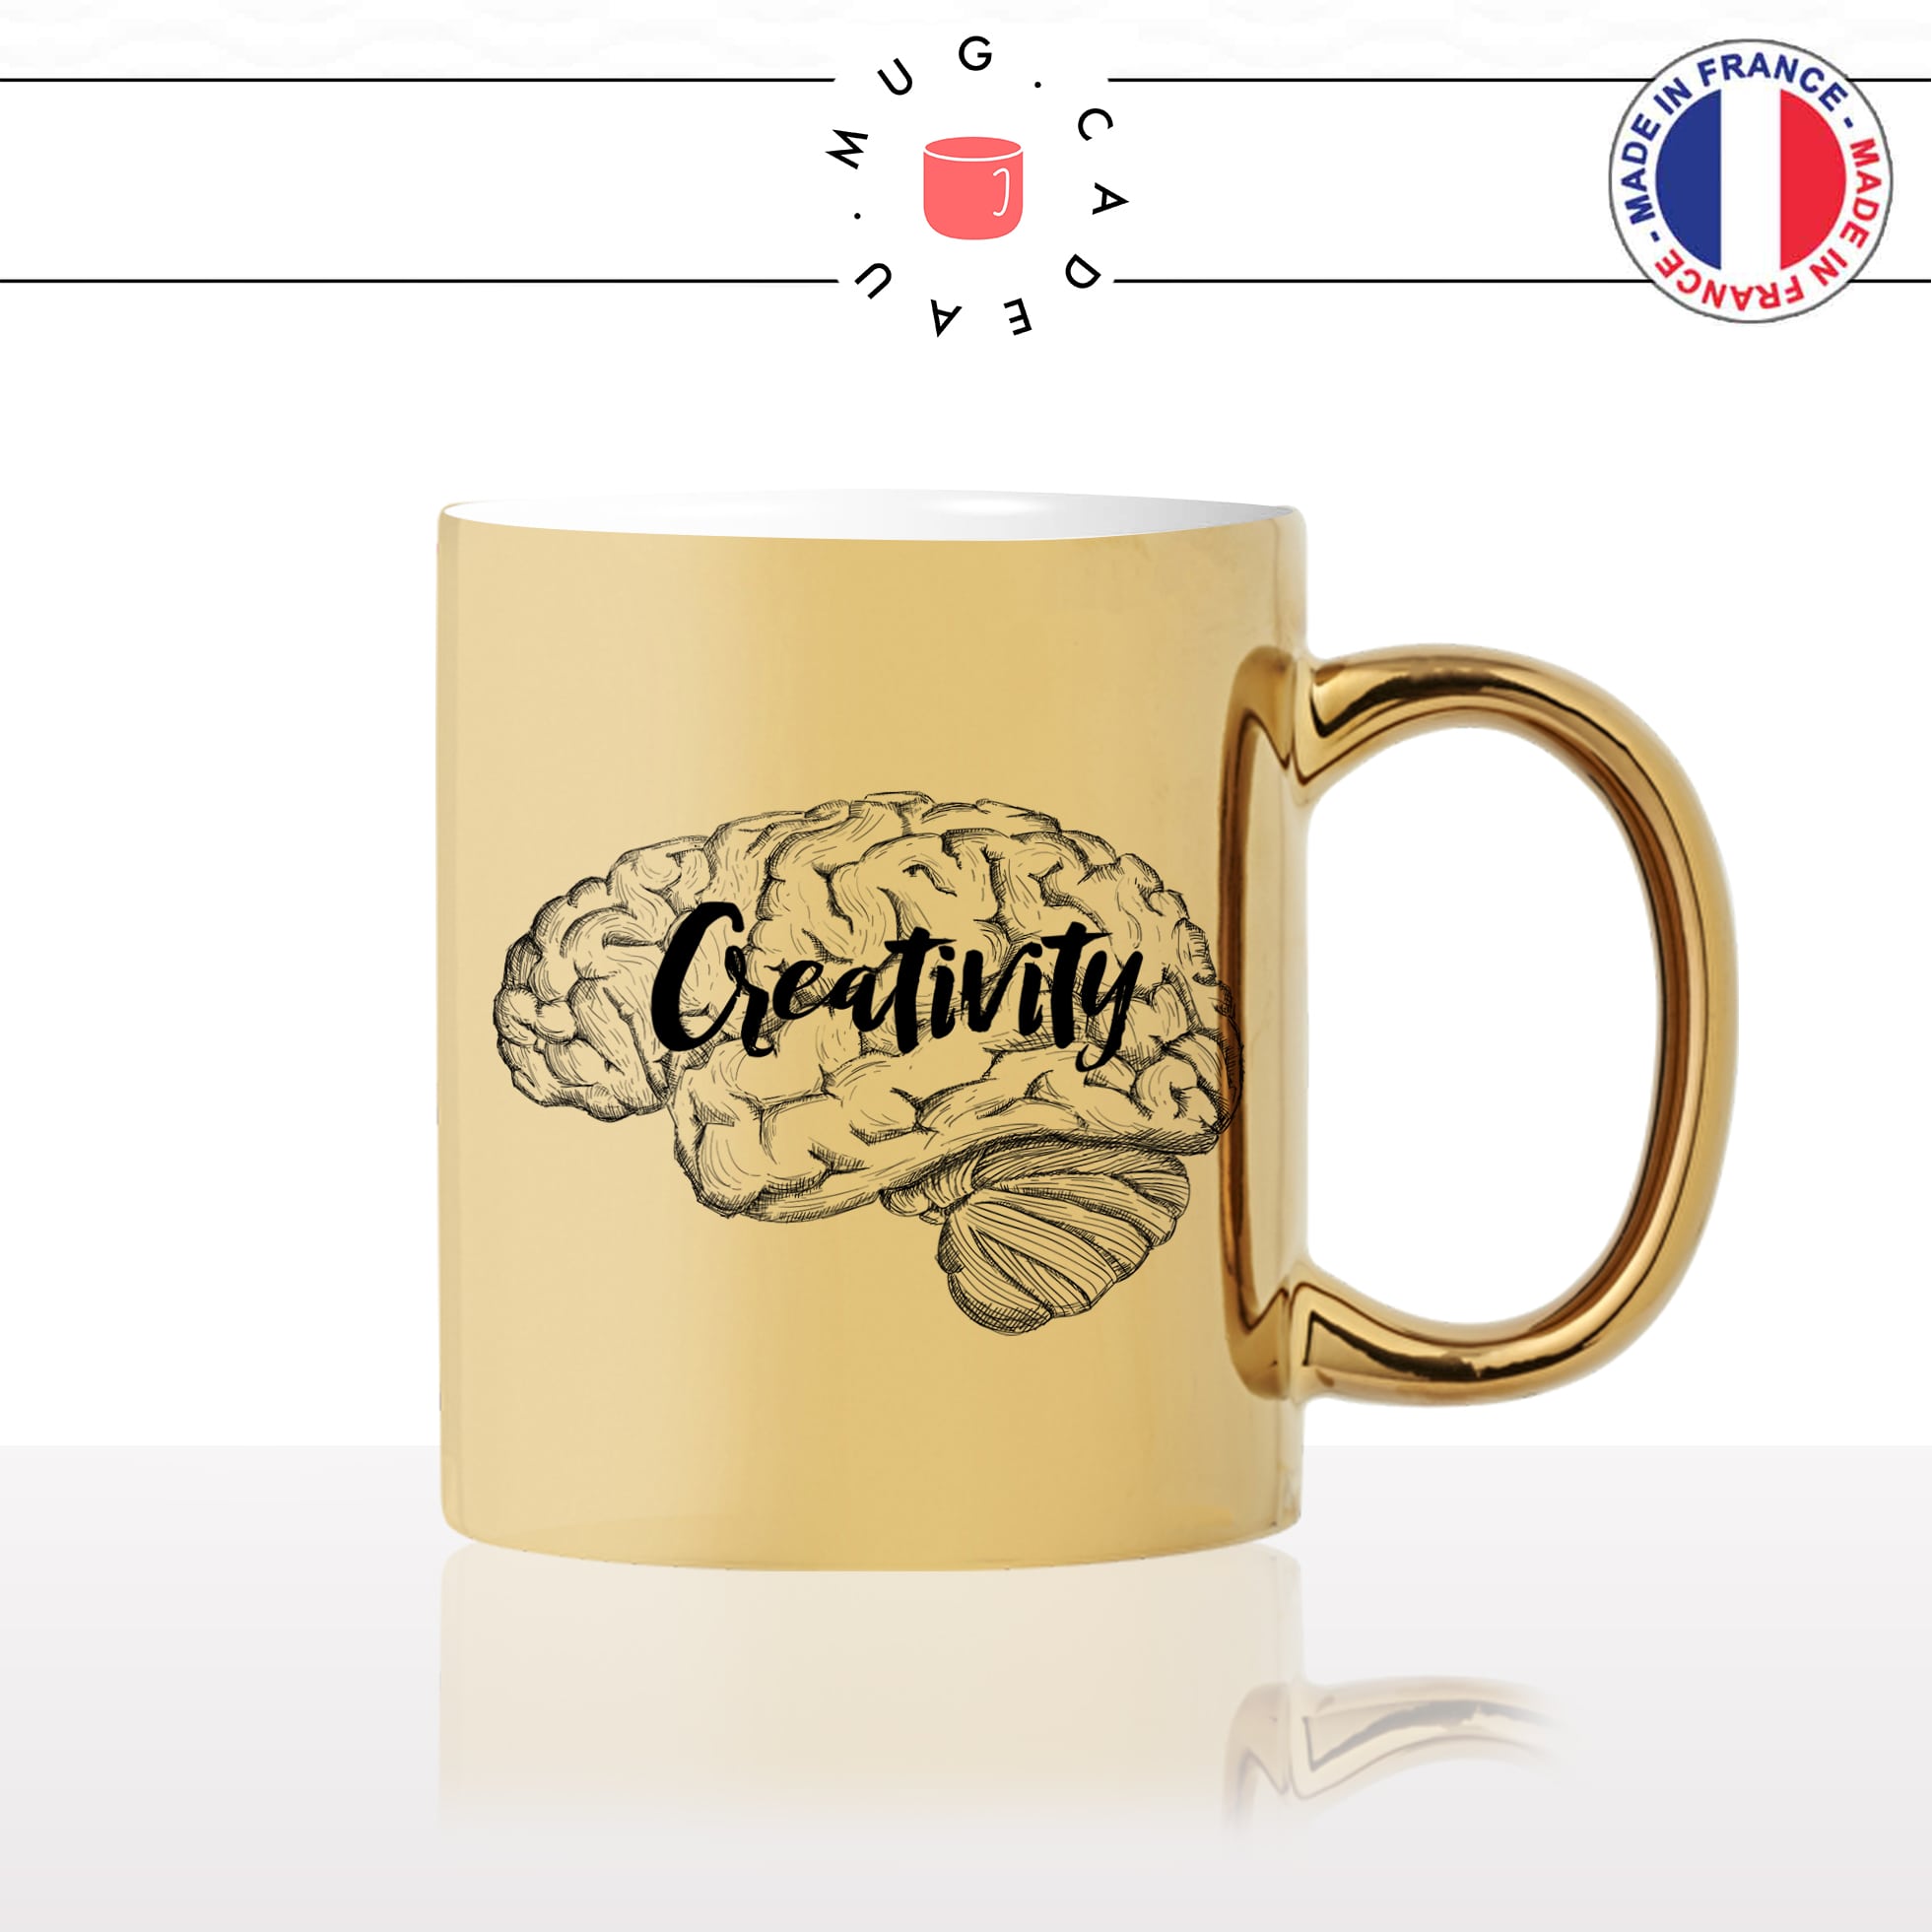 mug-tasse-doré-or-gold-cerveau-créativité-anglais-creativity-mot-intelligent-reflechir-travail-cool-humour-fun-idée-cadeau-personnalisé-café-thé2-min